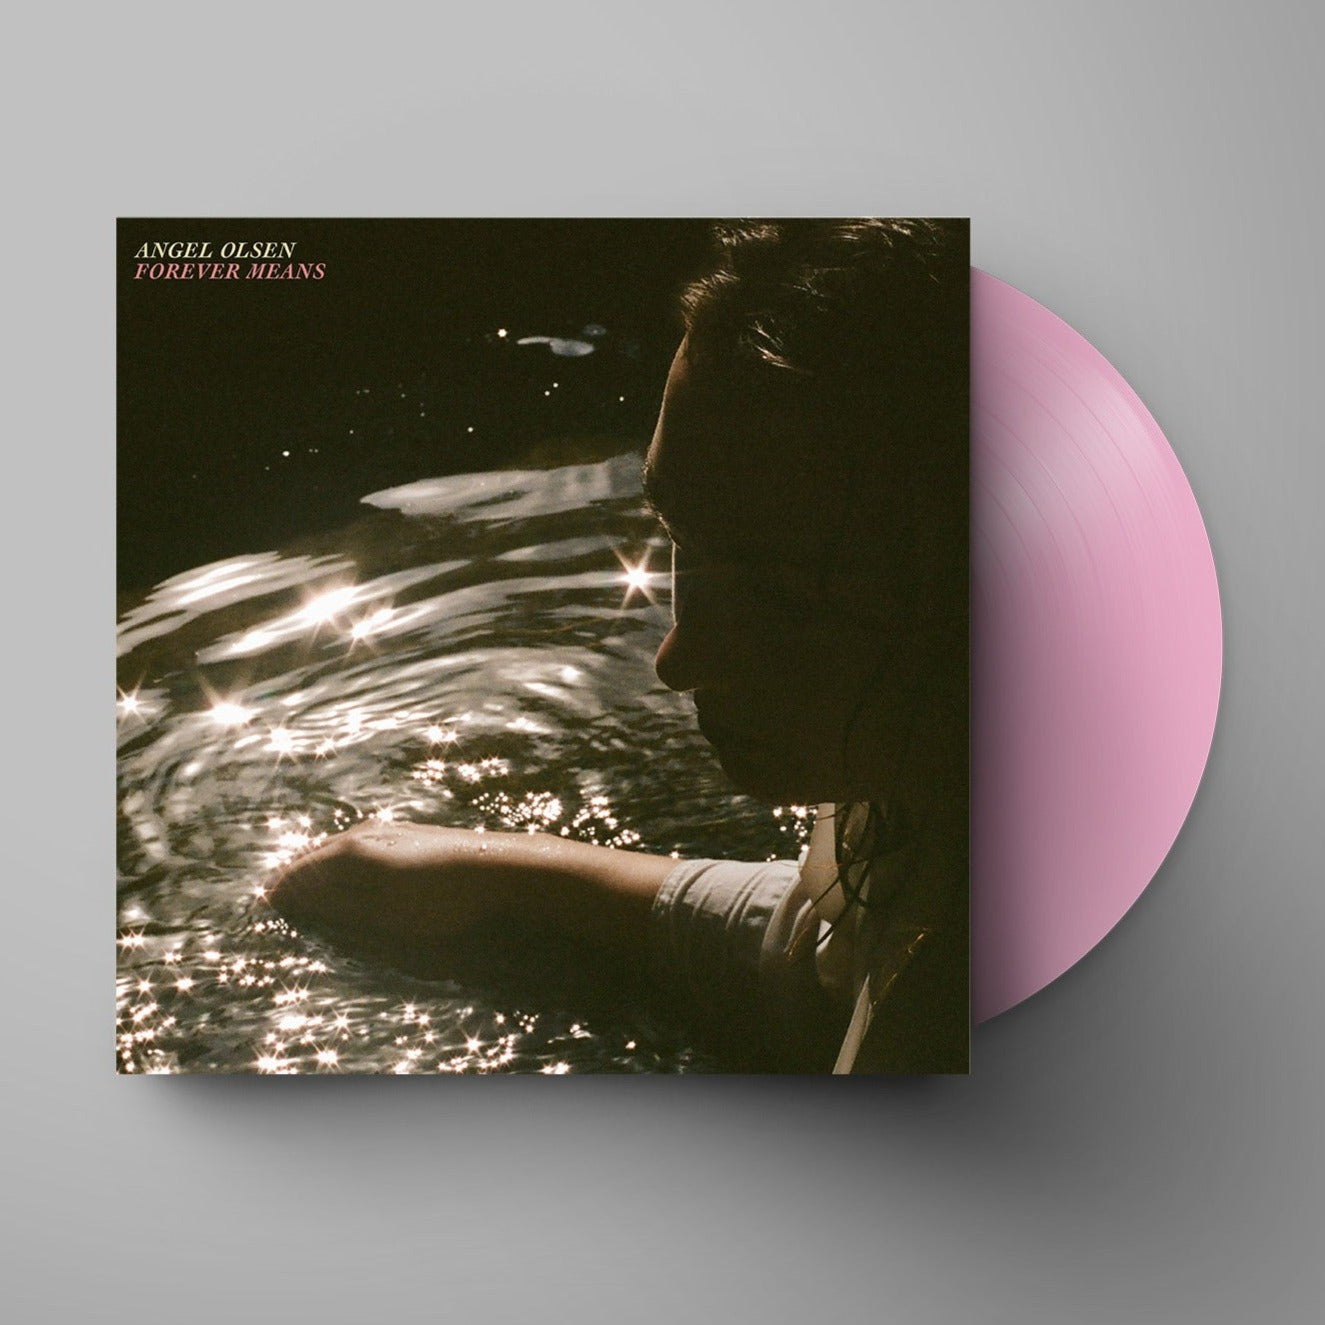 Angel Olsen - Forever Means 12" Single LP (Indie Exclusive Baby Pink Vinyl)